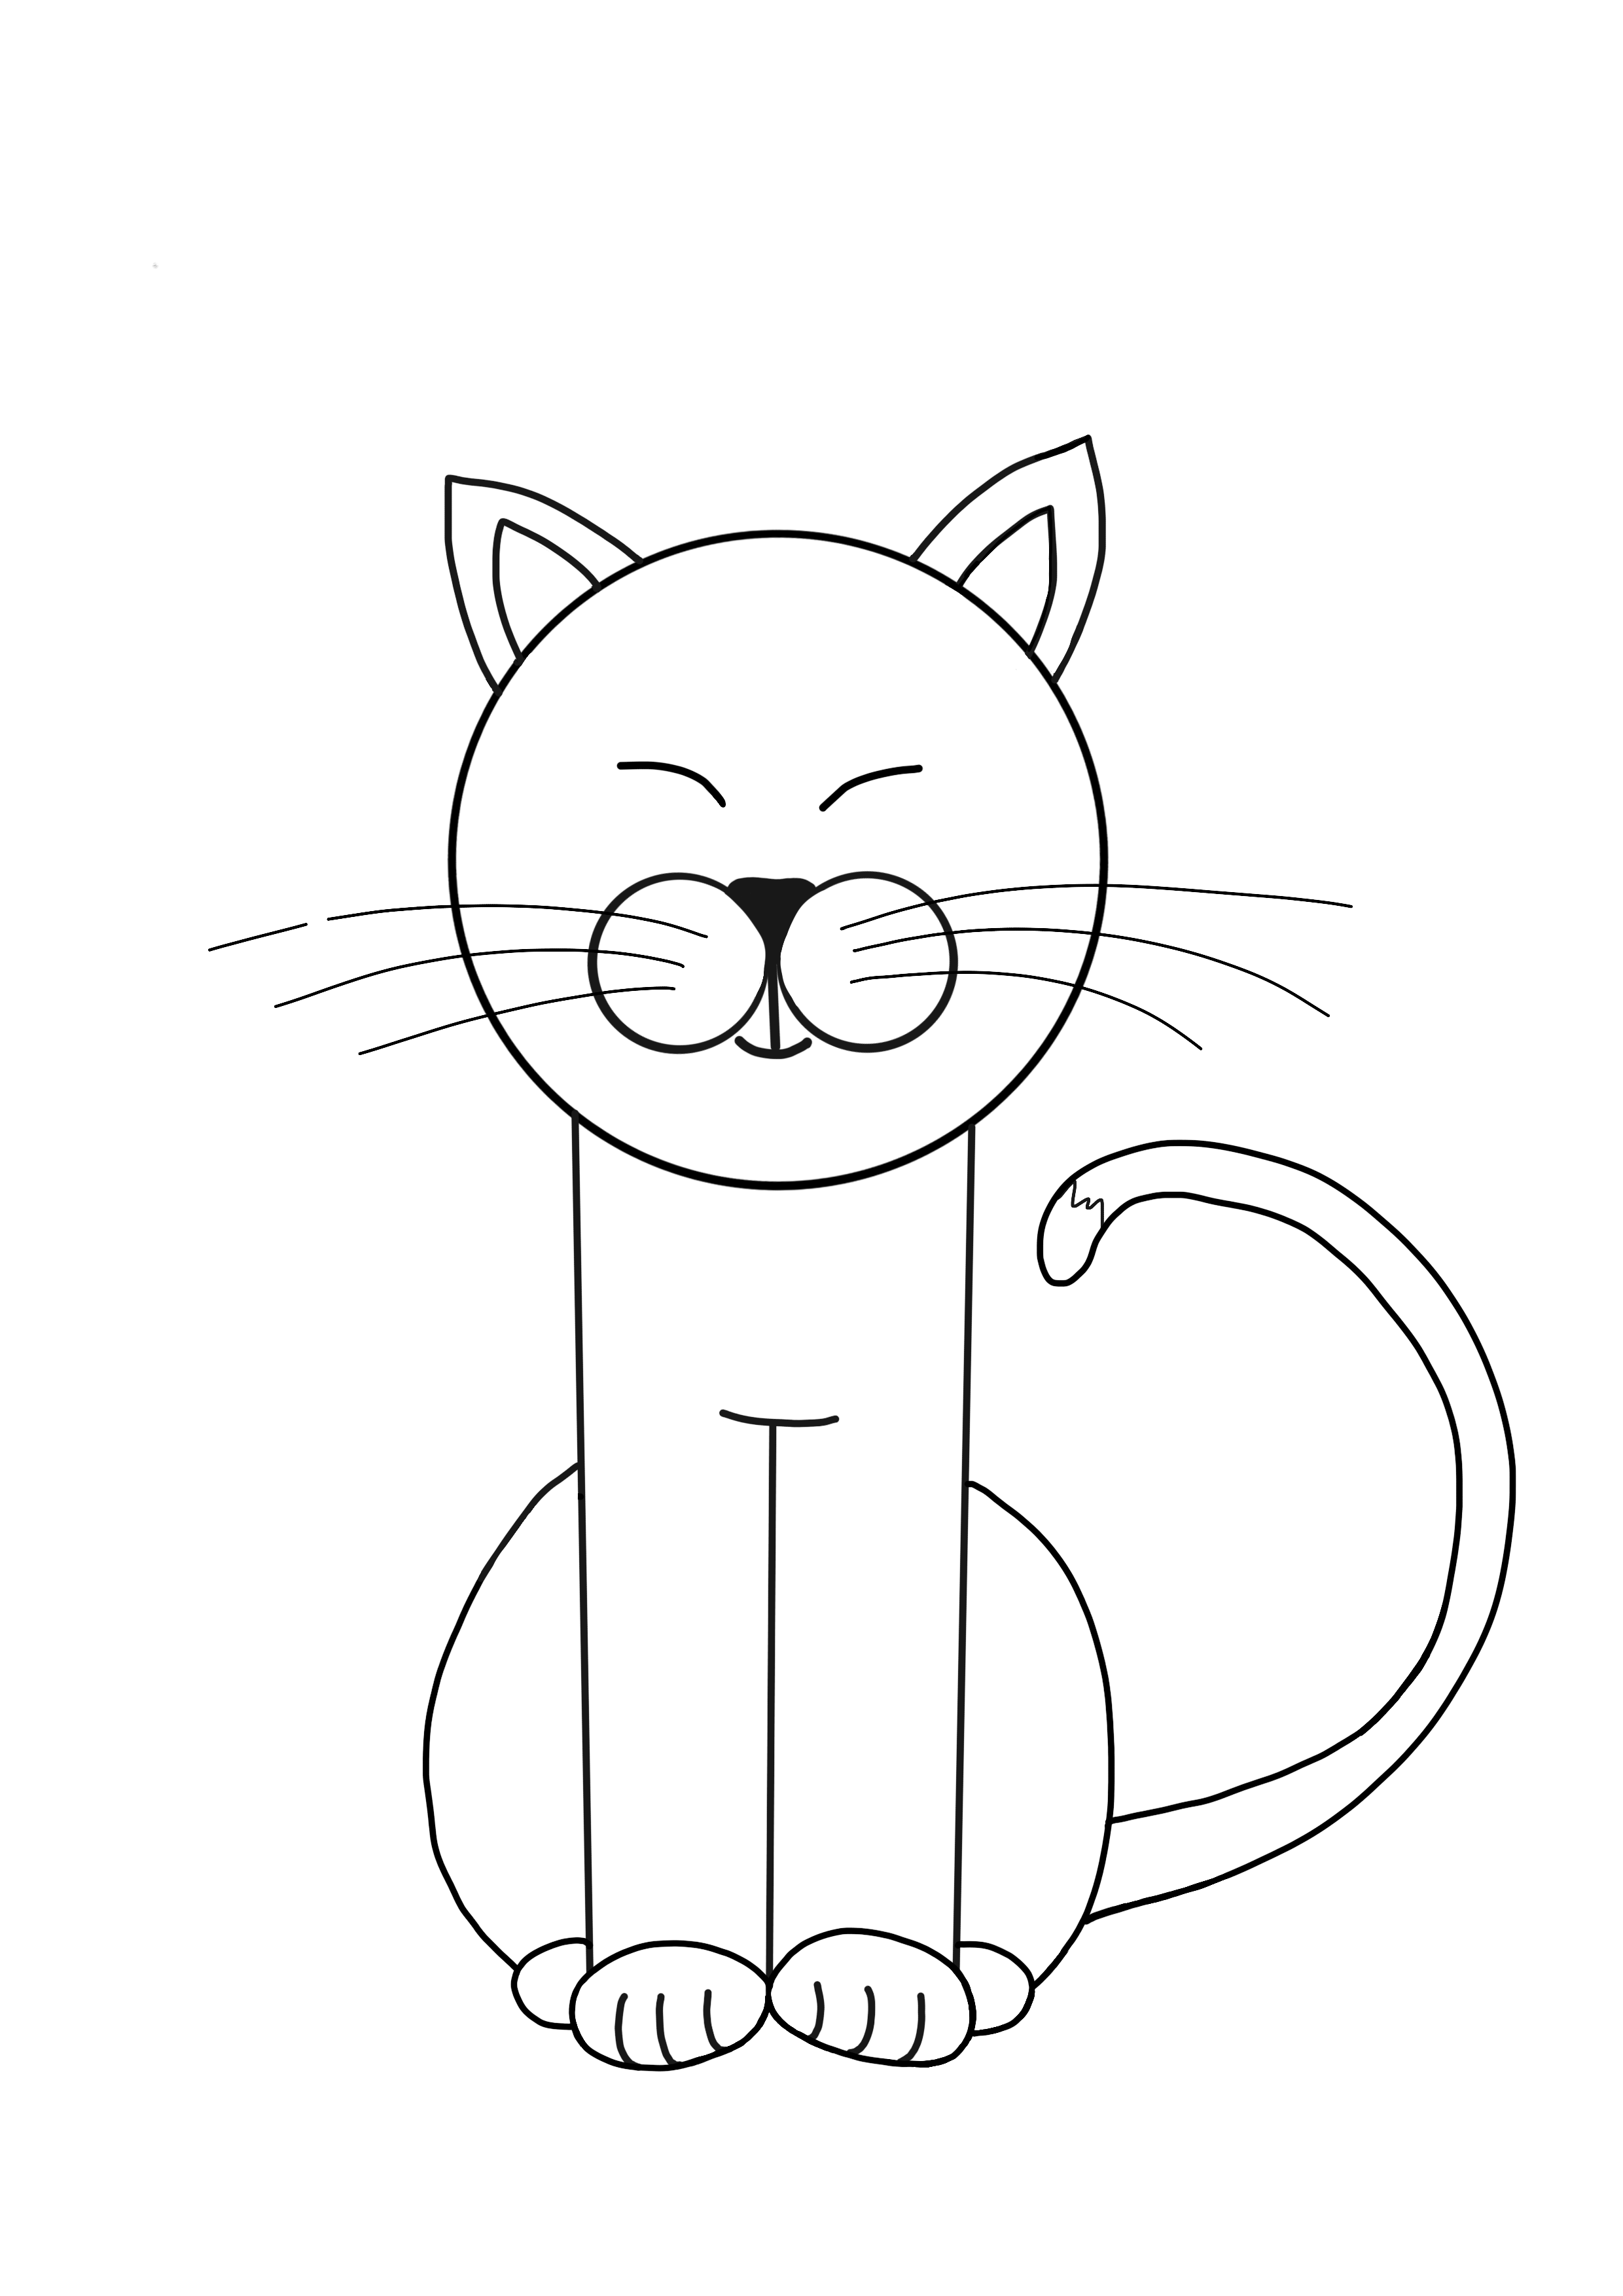 Как нарисовать кошку для детей